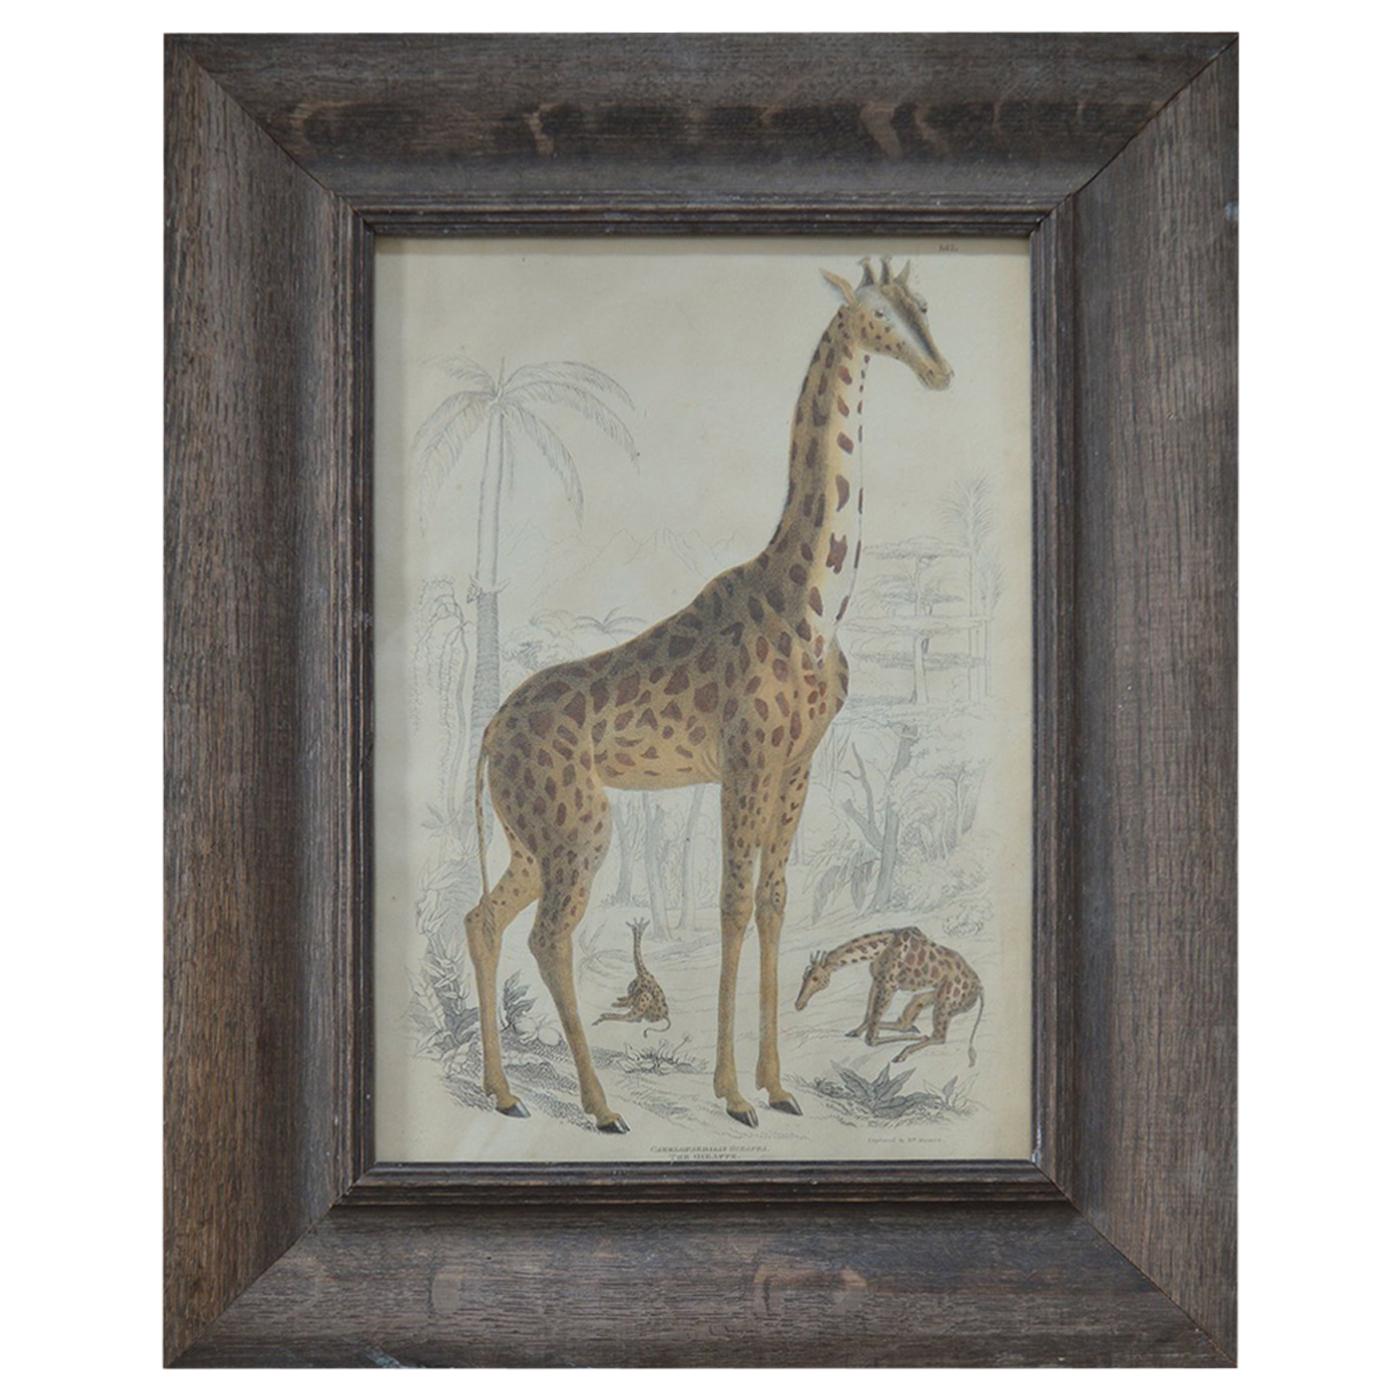 Original Antique Print of a Giraffe, 1835